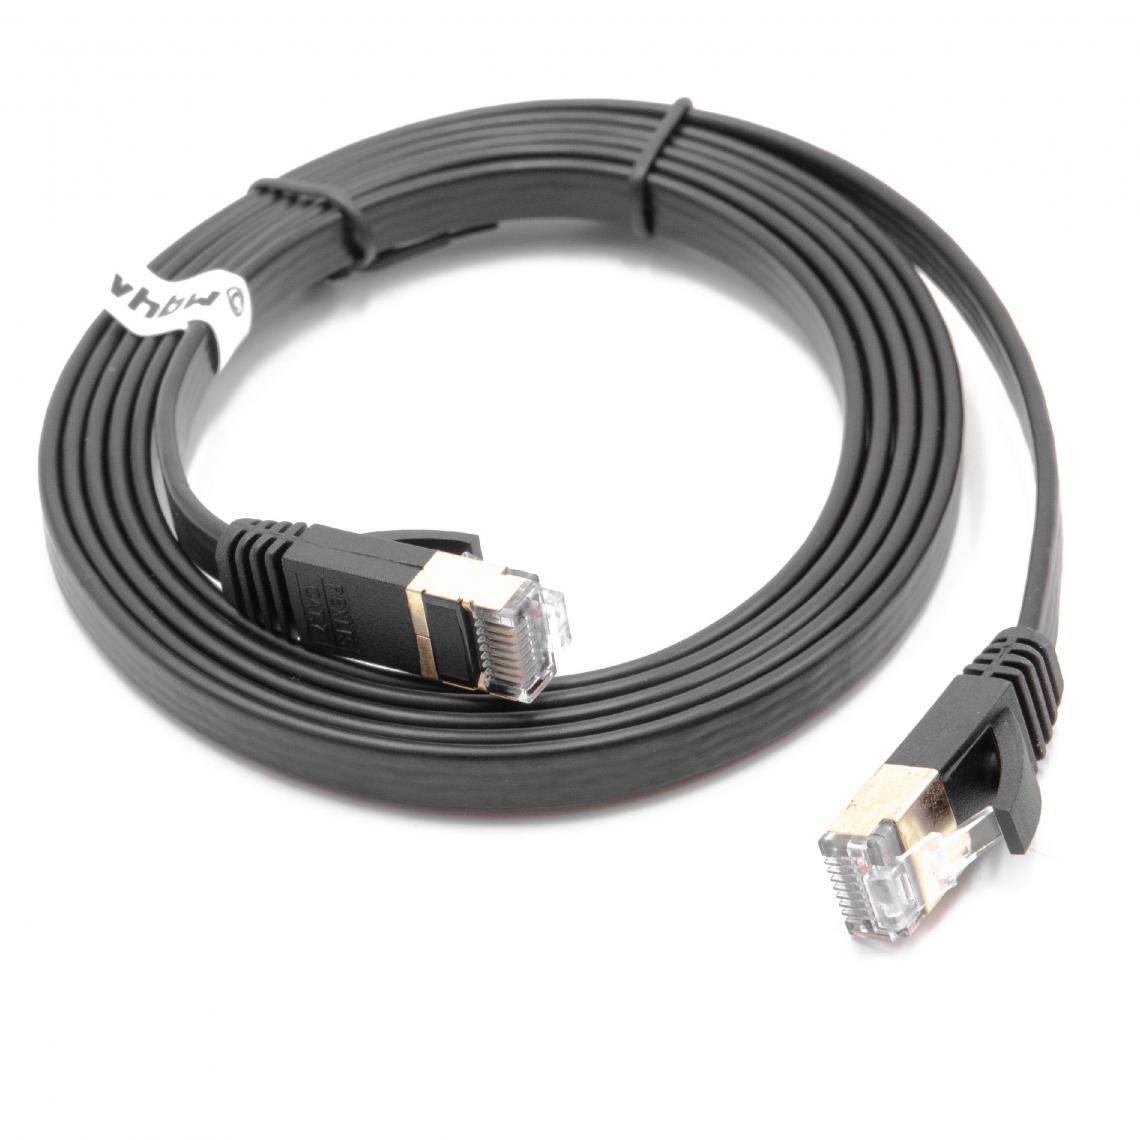 Vhbw - vhbw câble de réseau câble LAN Cat7 1.8m noir câble plat - Accessoires alimentation